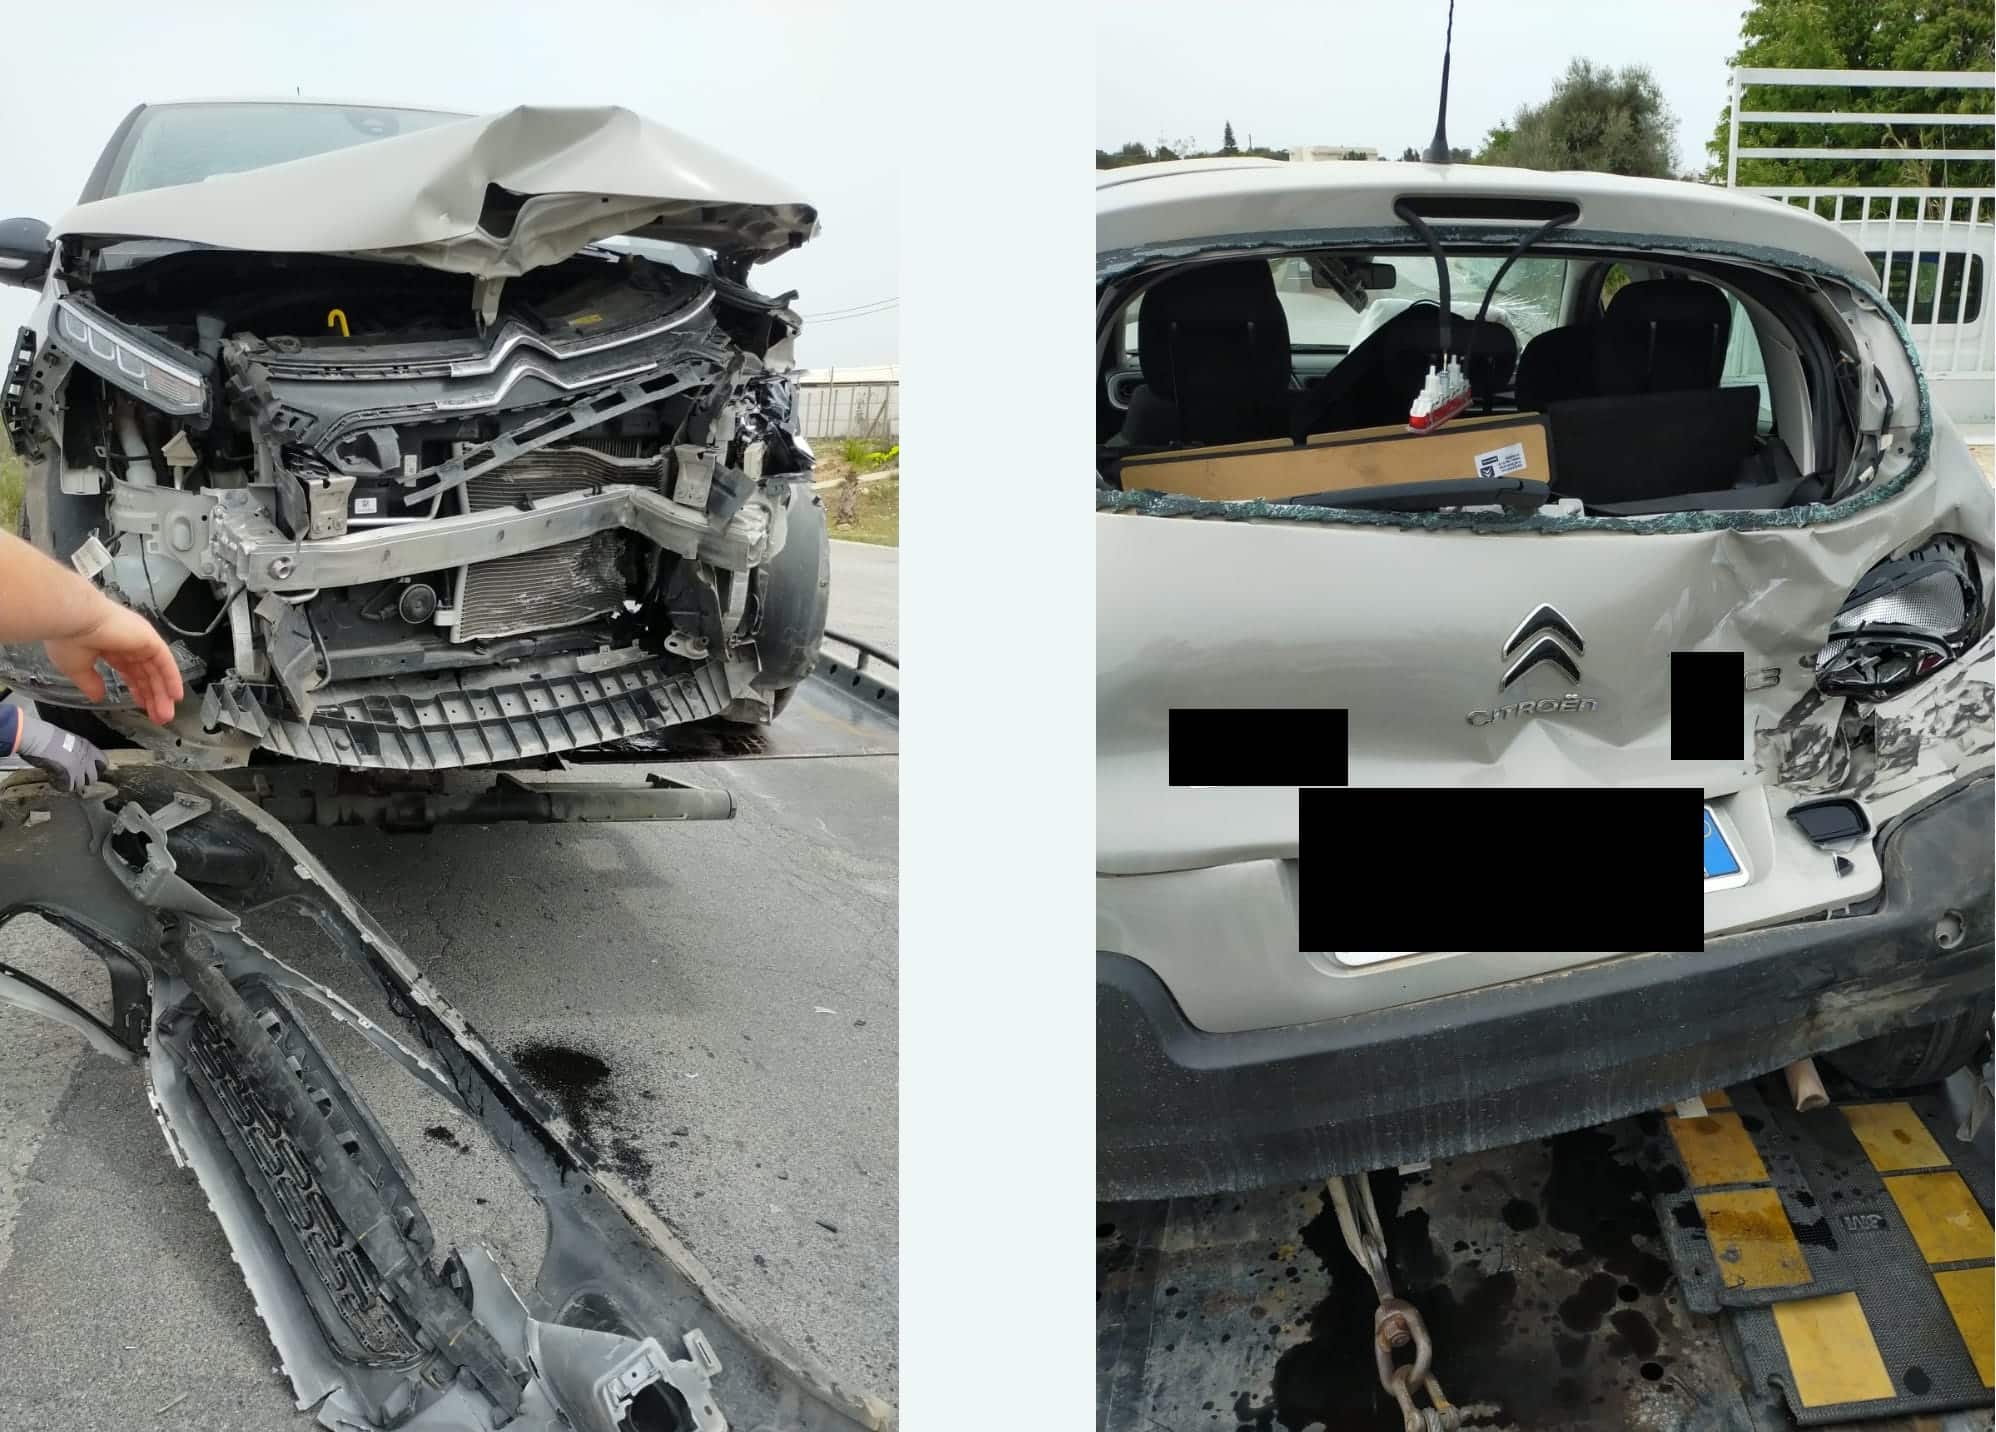 Maxi e violento scontro a catena lungo la SP 16: veicoli completamente distrutti, 4 feriti – FOTO